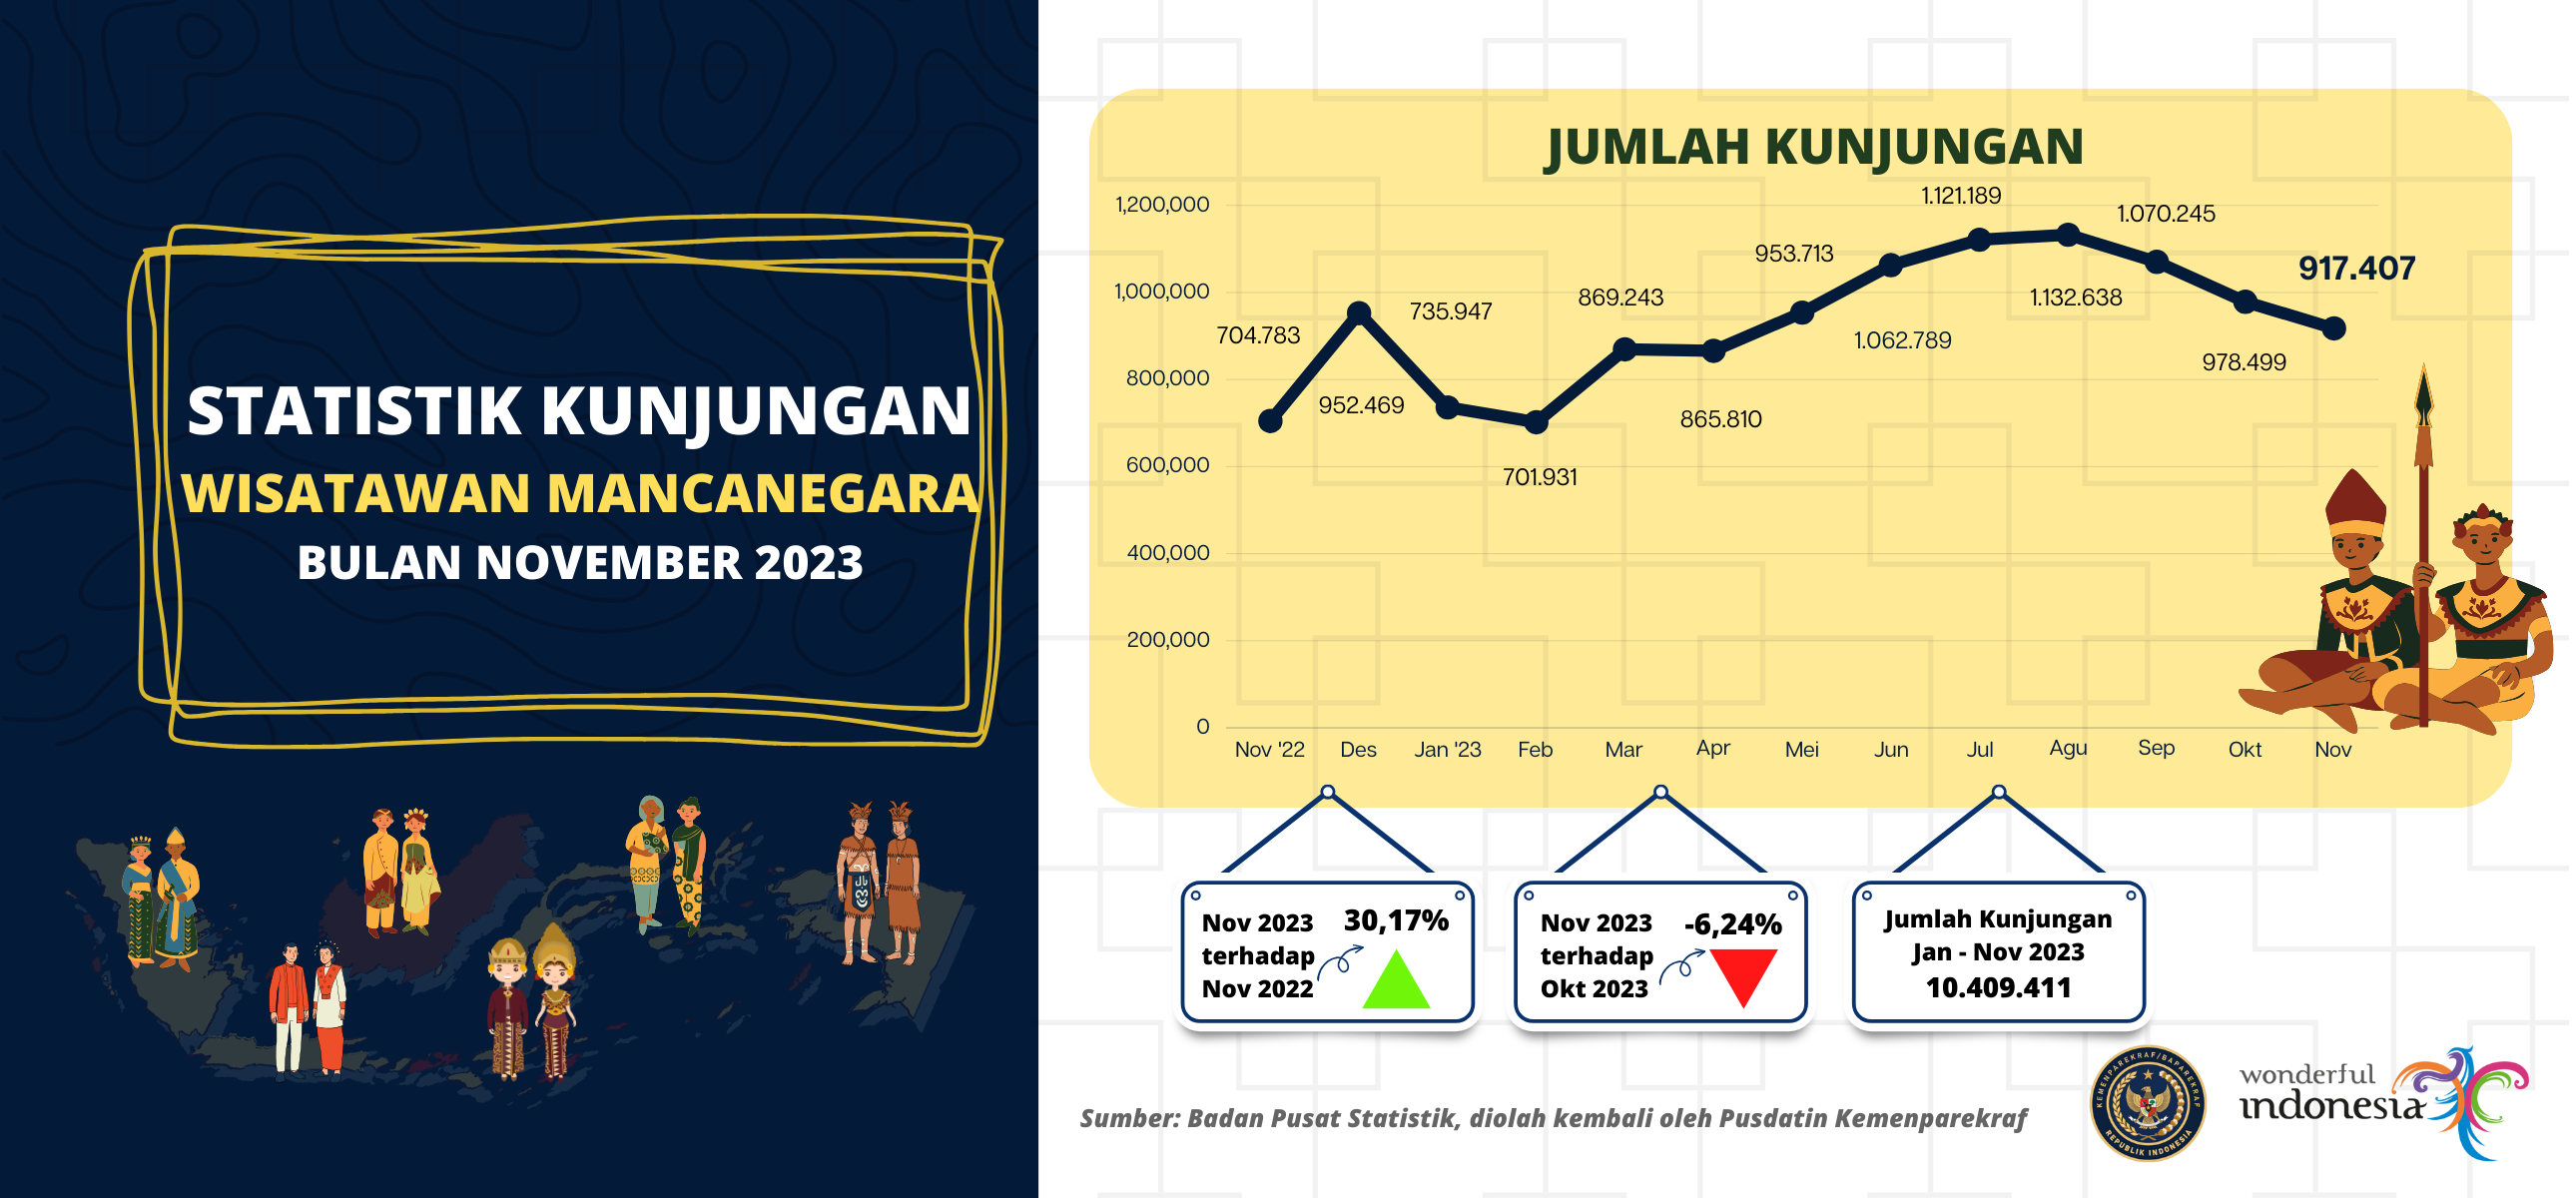 Statistik Kunjungan Wisatawan Mancanegara Bulan November 2023